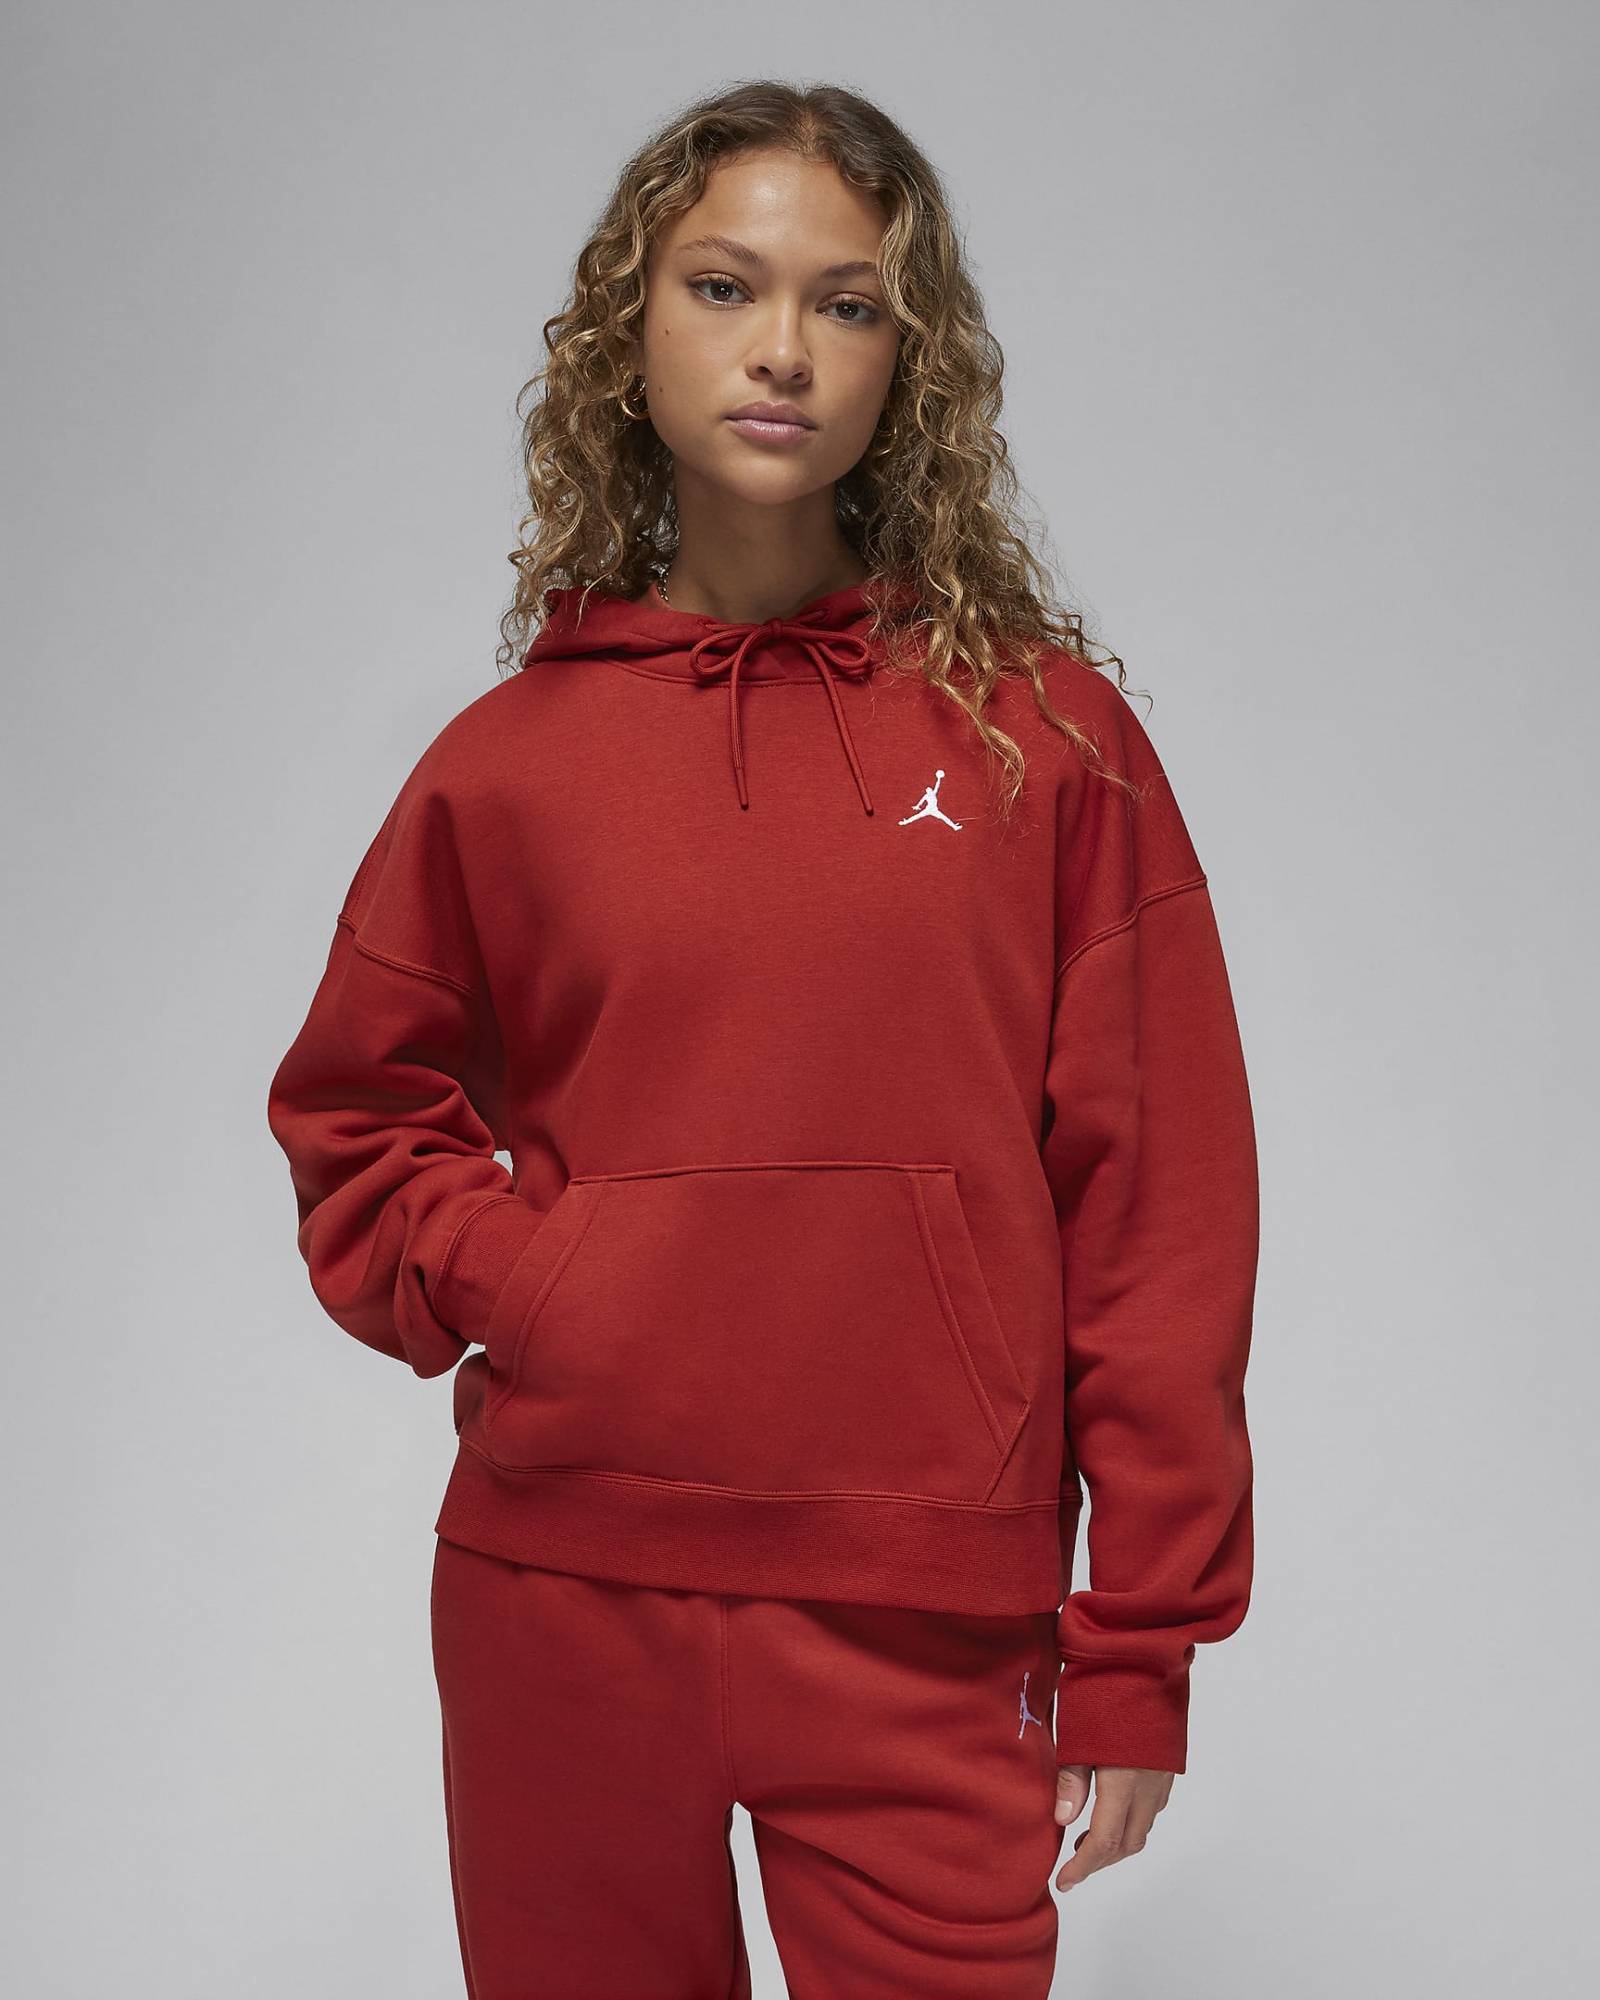 Bluza sportowa Nike Jordan czerwona, 349,99 zł (Fot. Materiały prasowe)